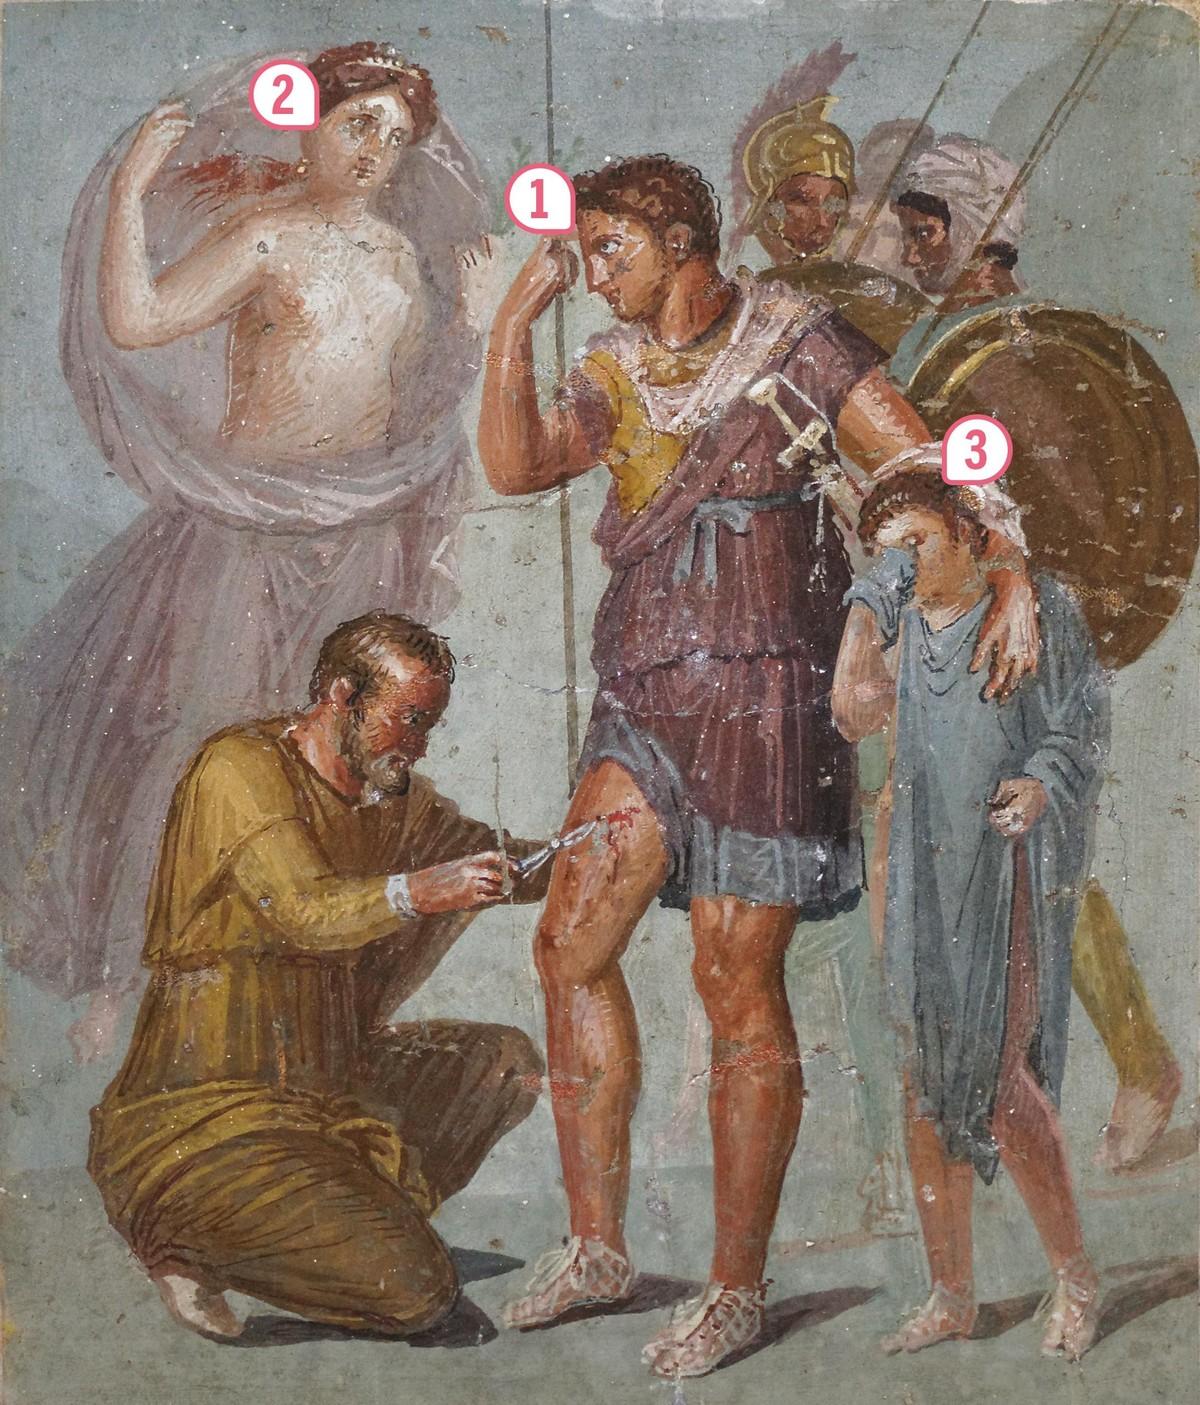 Fresque de Pompéi, Iᵉ siècle après J.-C. (Musée archéologique national, Naples).